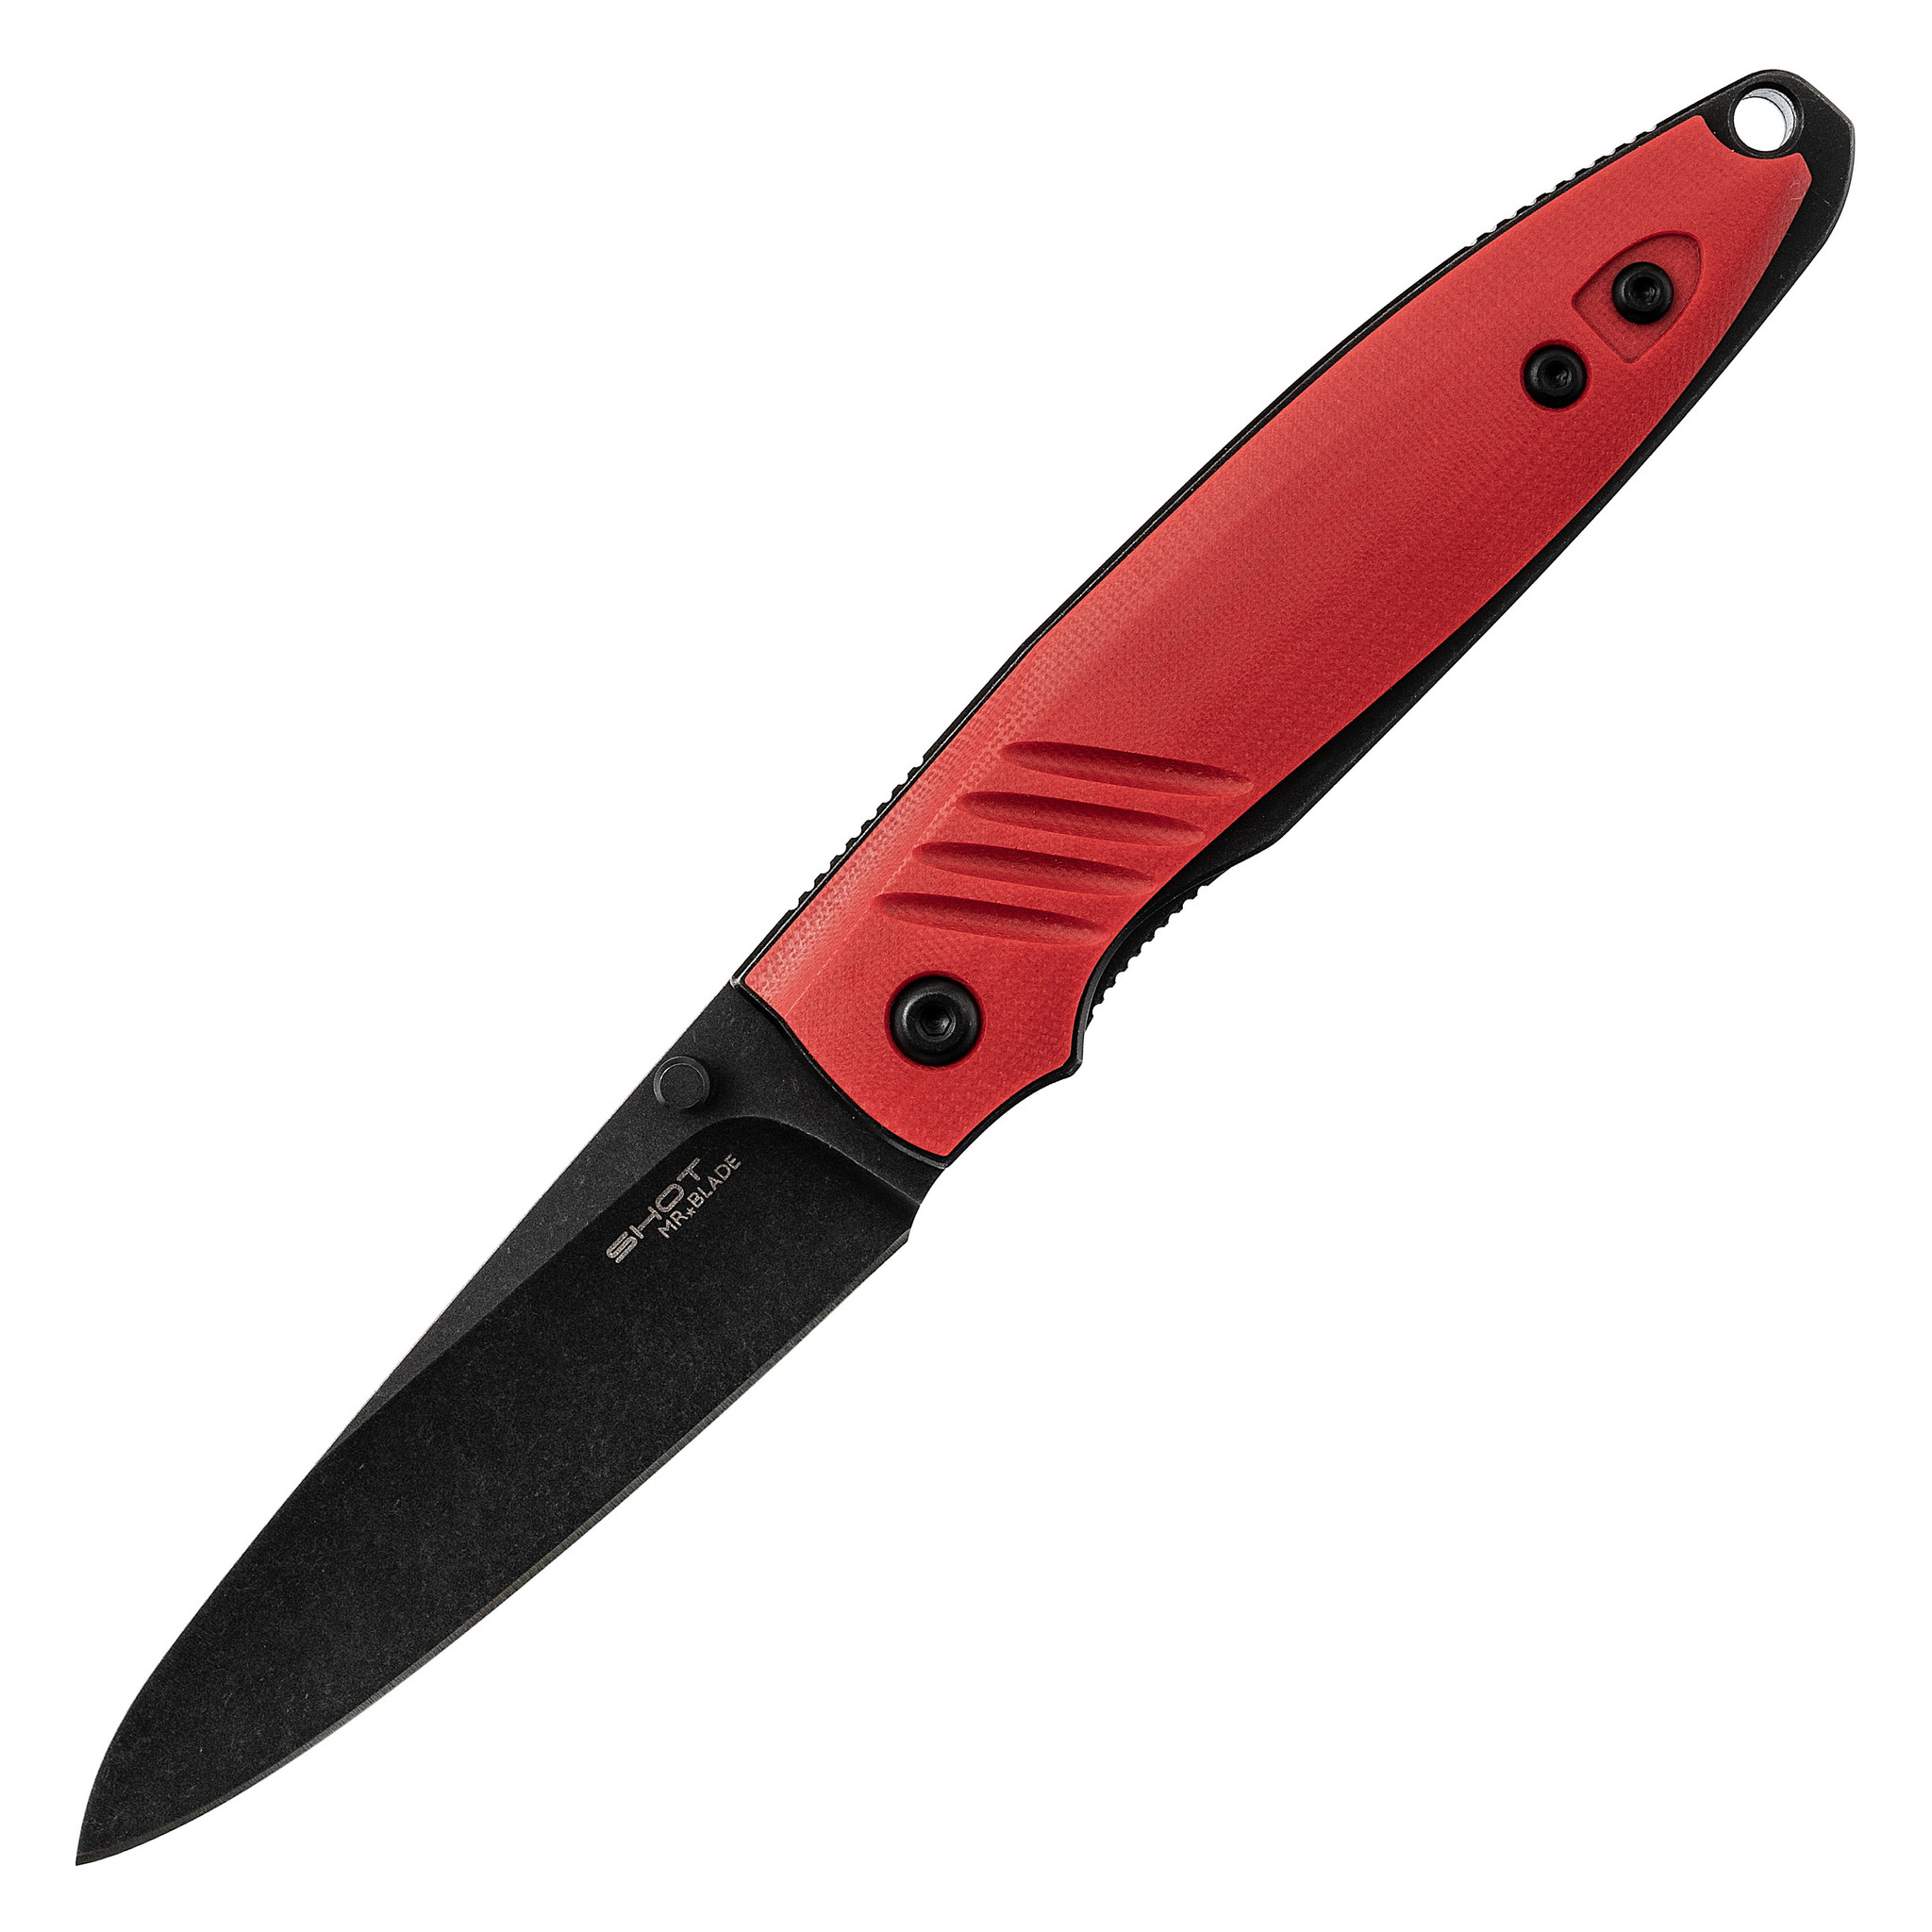 Складной нож Shot Blackwash Red, Mr.Blade полуавтоматический складной нож rat 1a assisted   blade olive drab g 10 handle